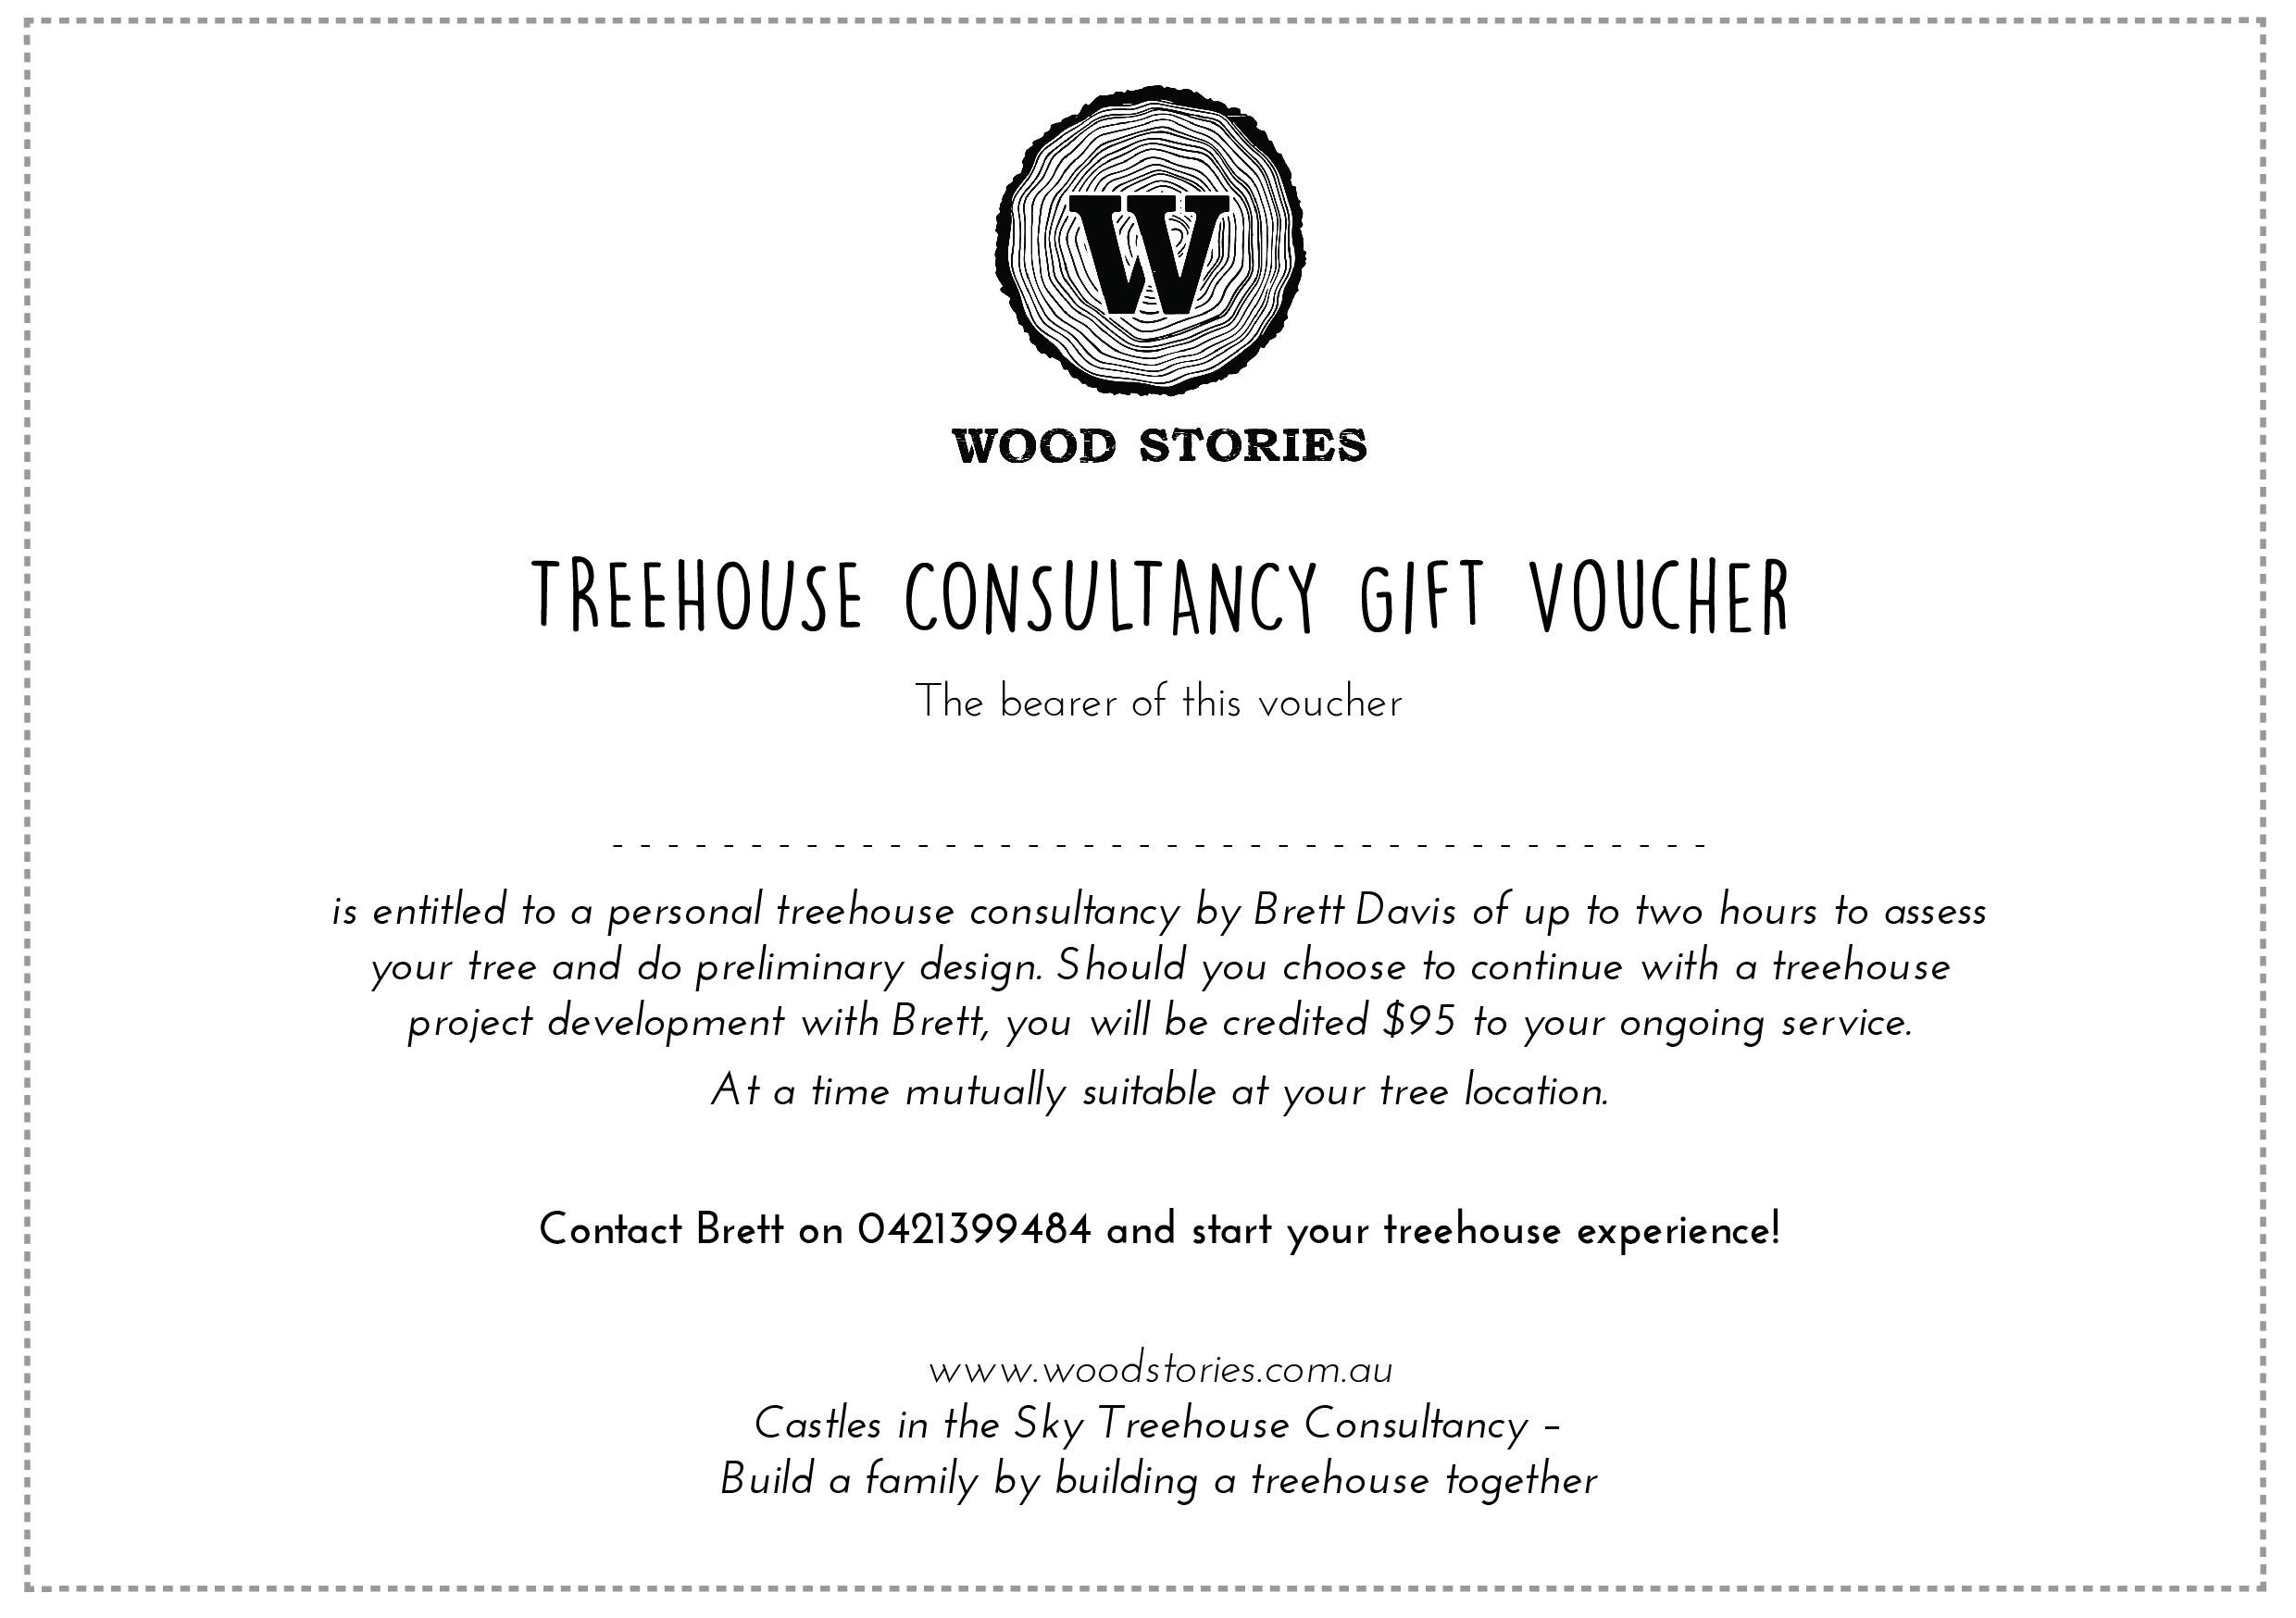 gift voucher treehouses.jpg